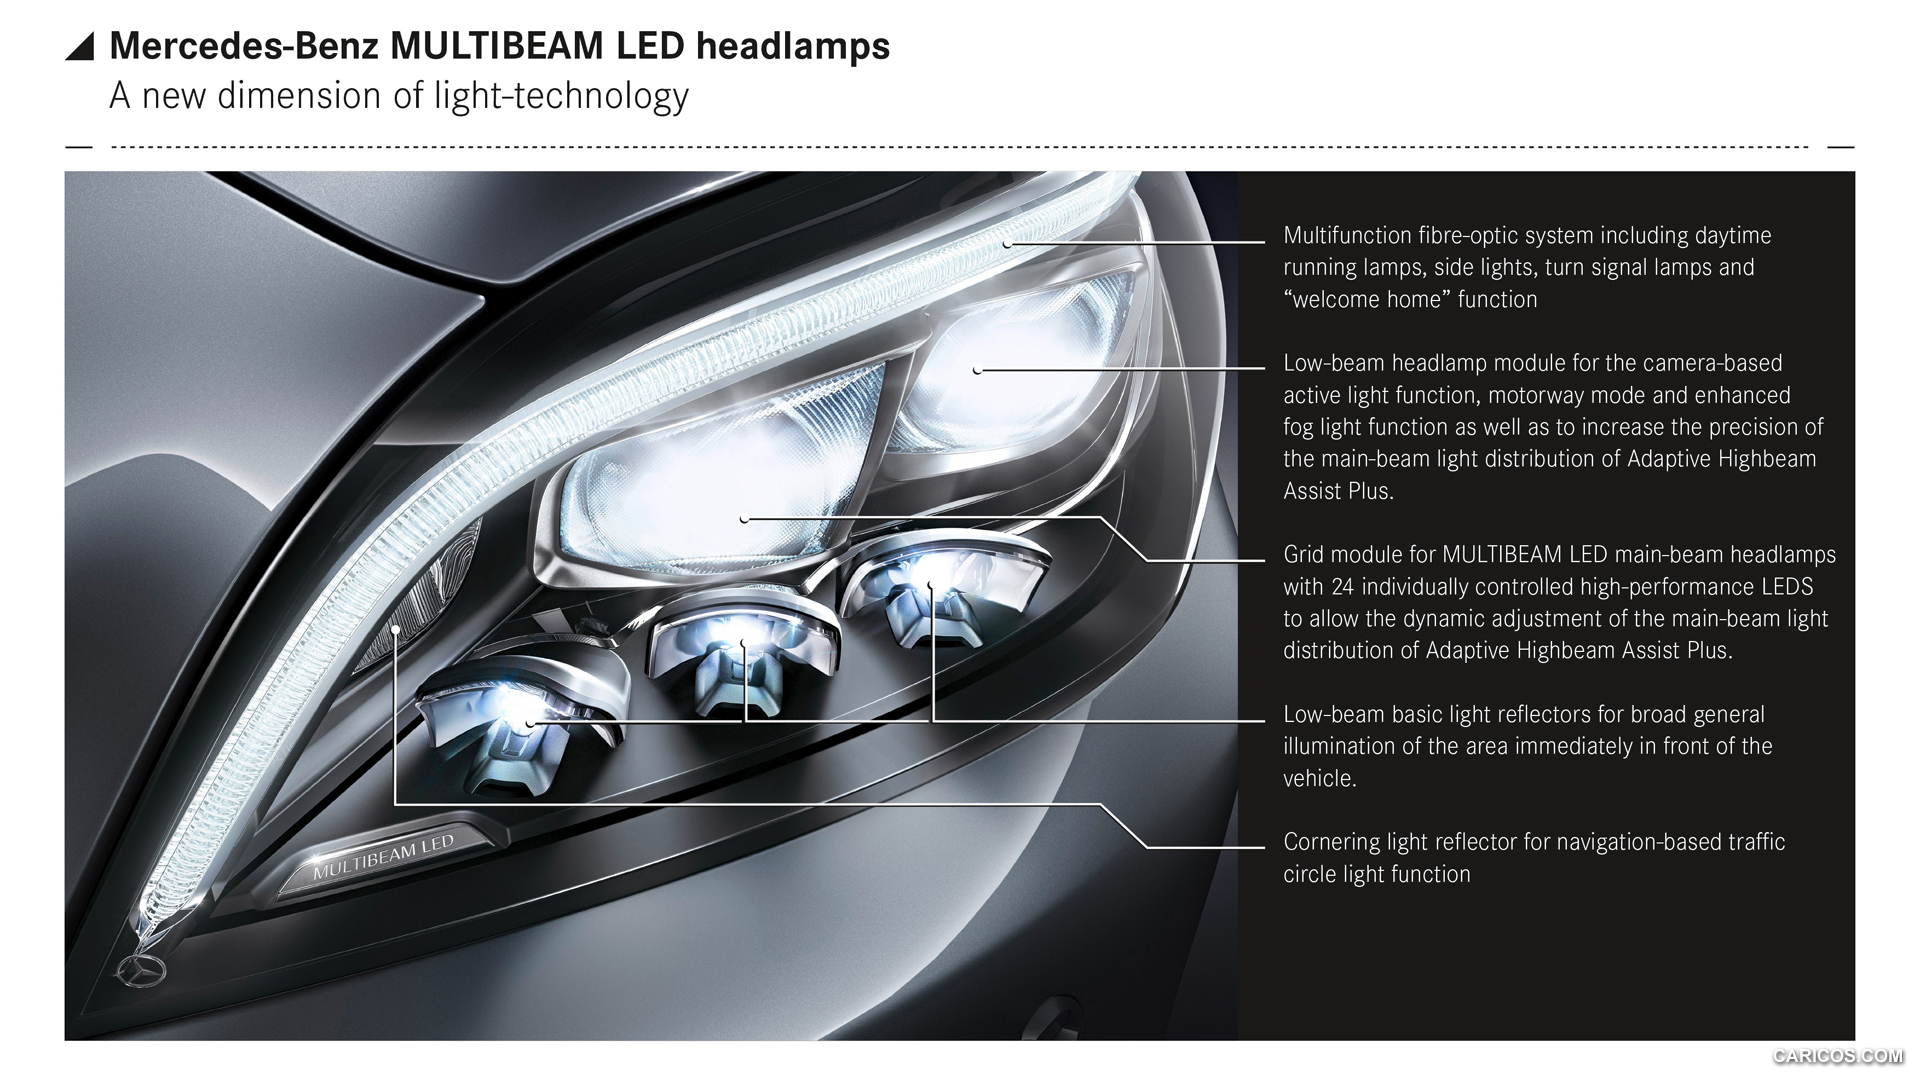 2015 Mercedes-Benz CLS-Class - MULTIBEAM LED - Headlight, #47 of 94